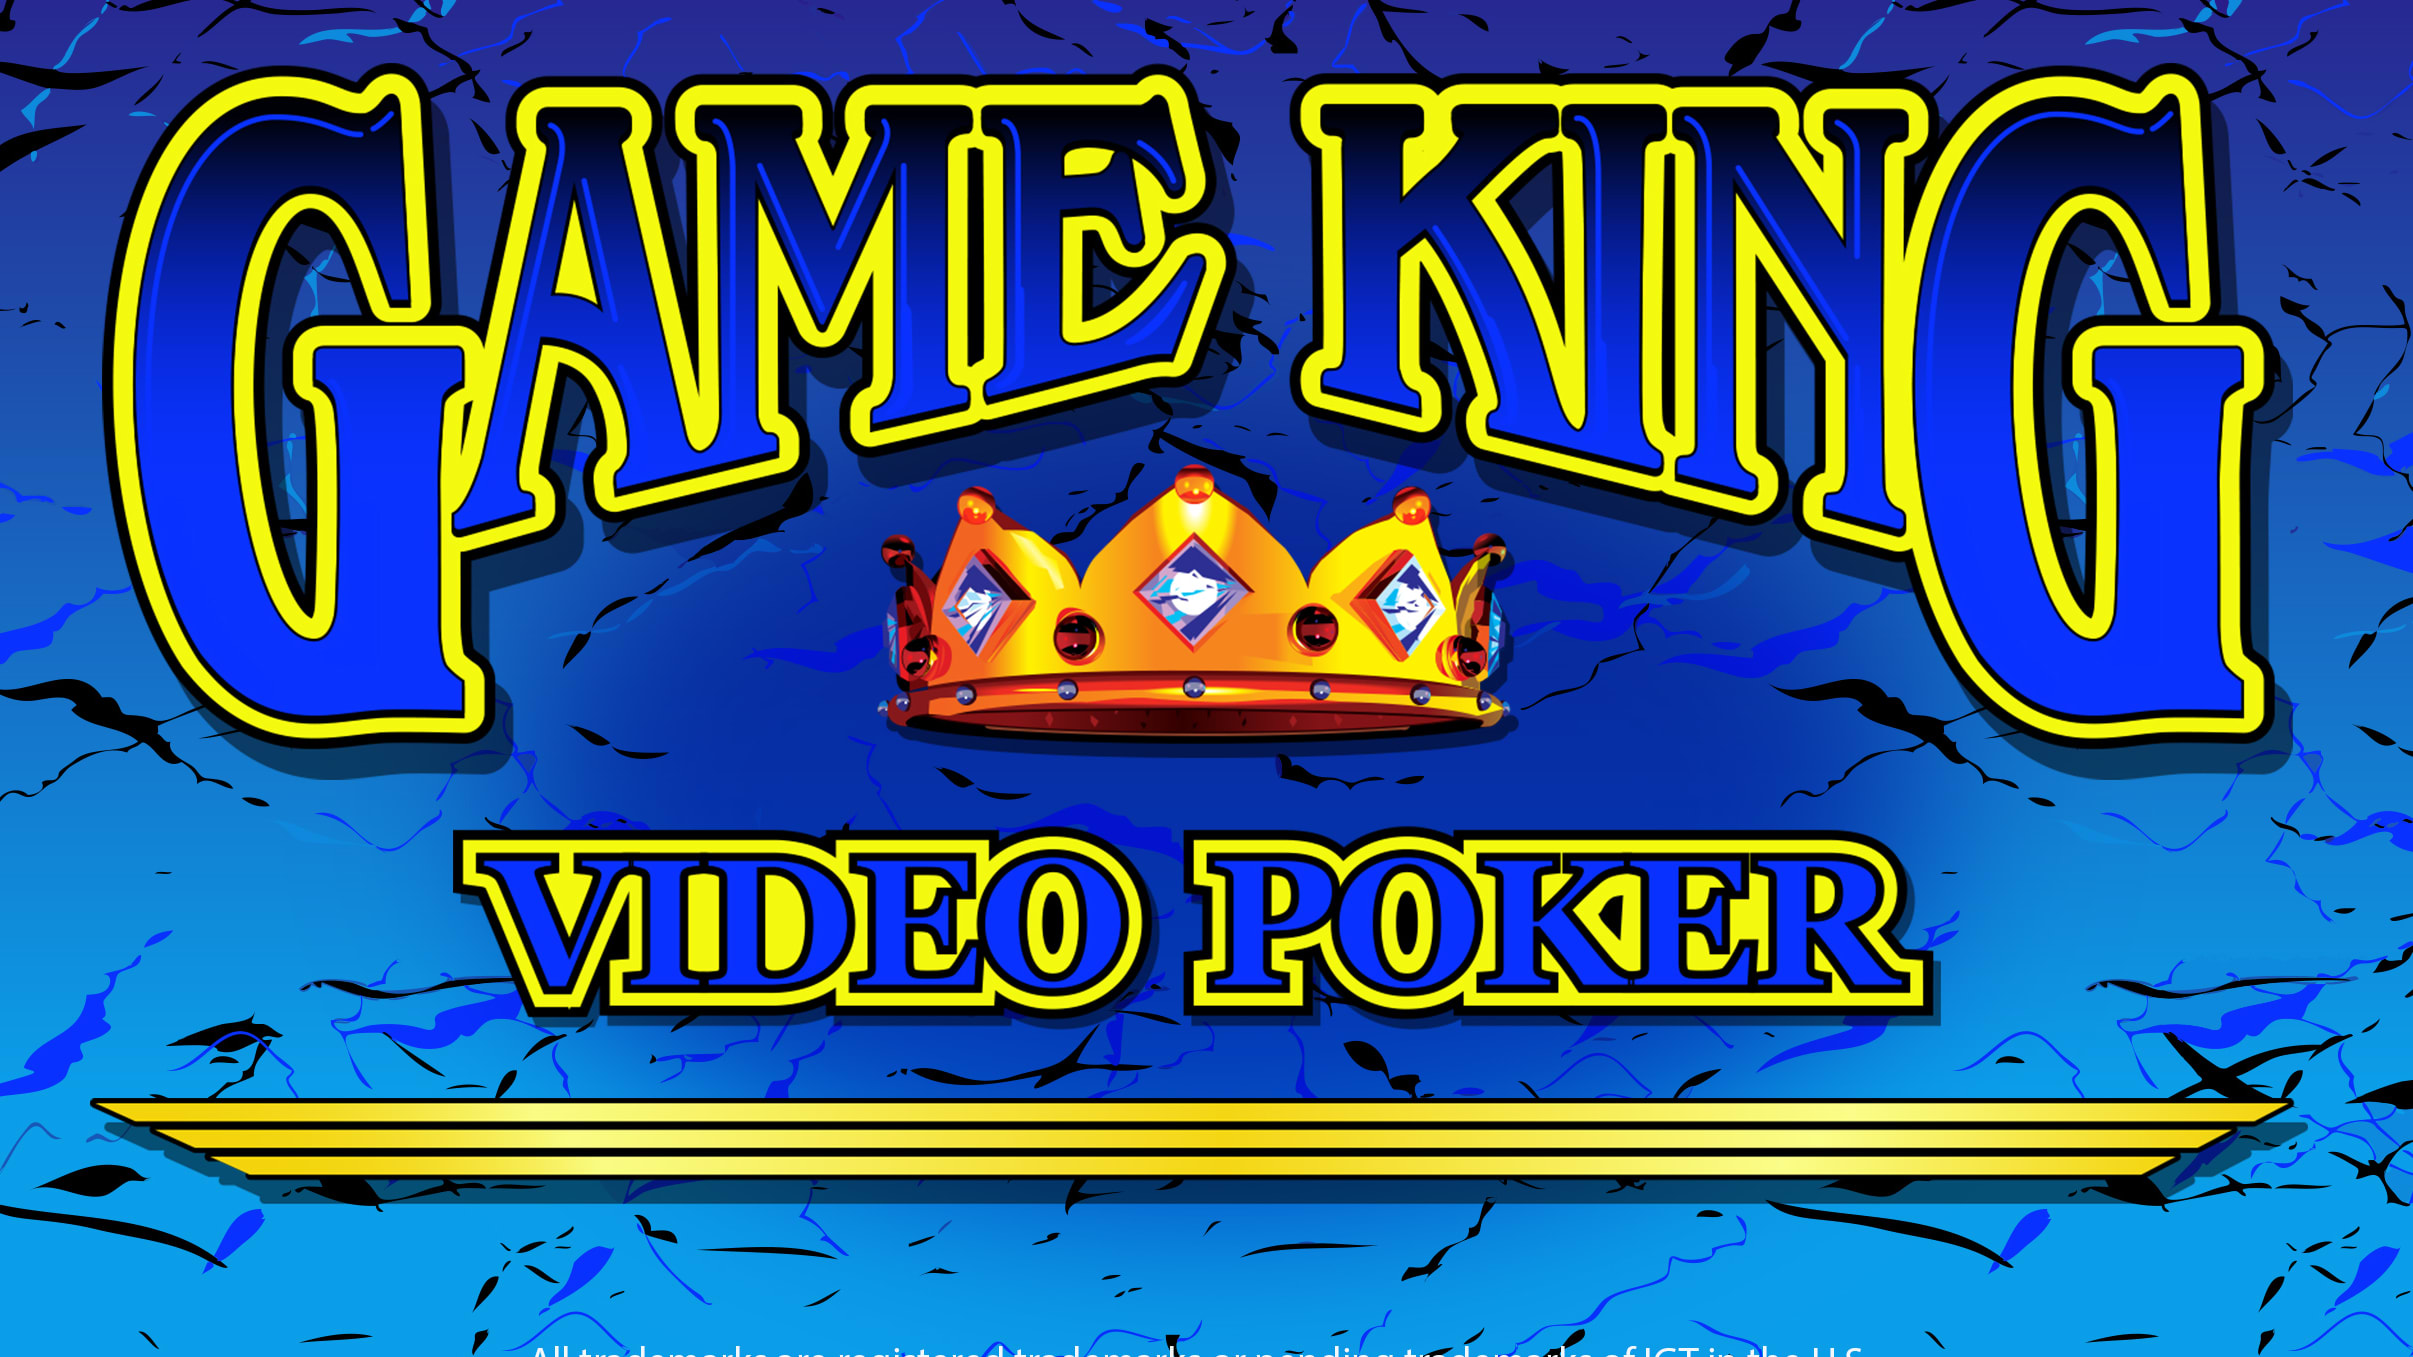 Game King Video Poker - Fanduel Casino Review